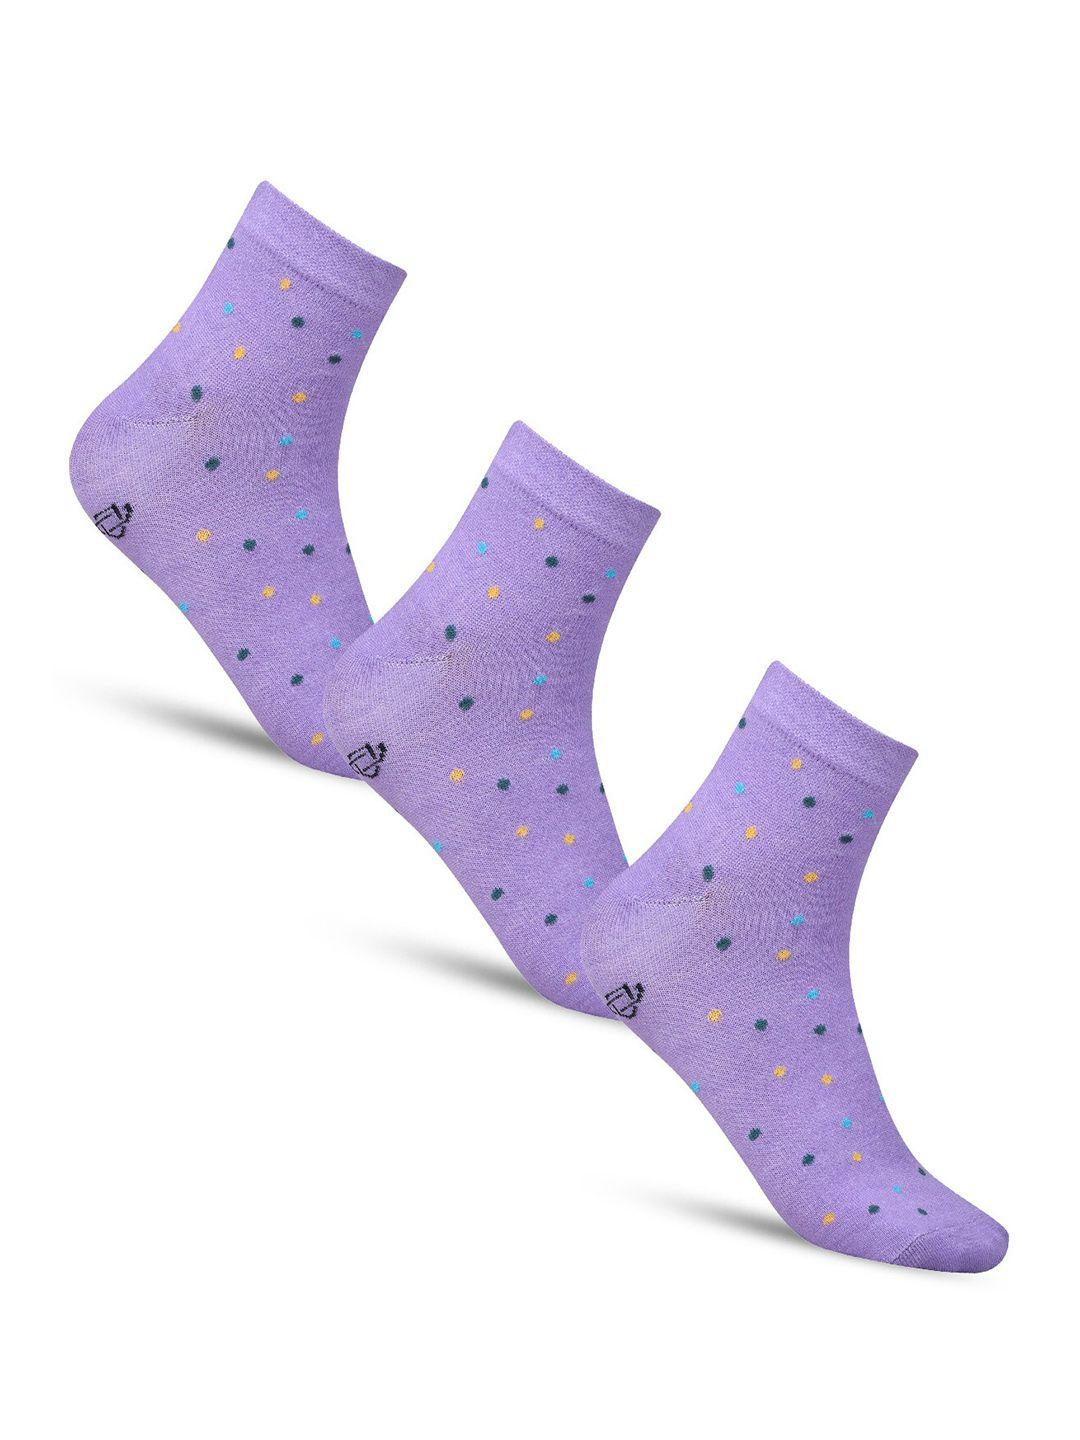 dollar socks women pack of 3 patterned above ankle-length cotton socks